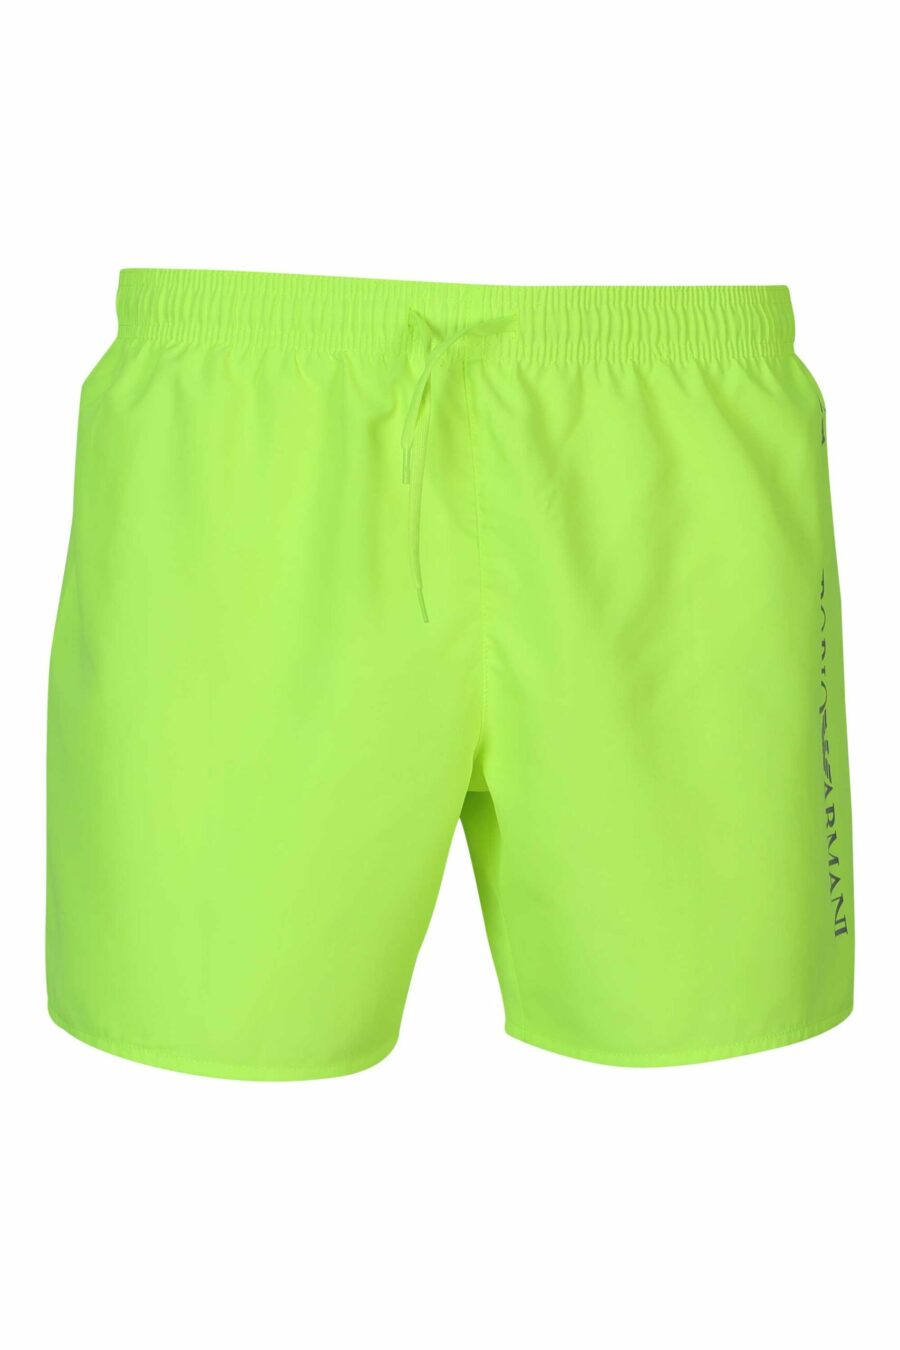 Neongrüner Badeanzug mit vertikalem seitlichem "lux identity" Logo - 8059972905280 skaliert